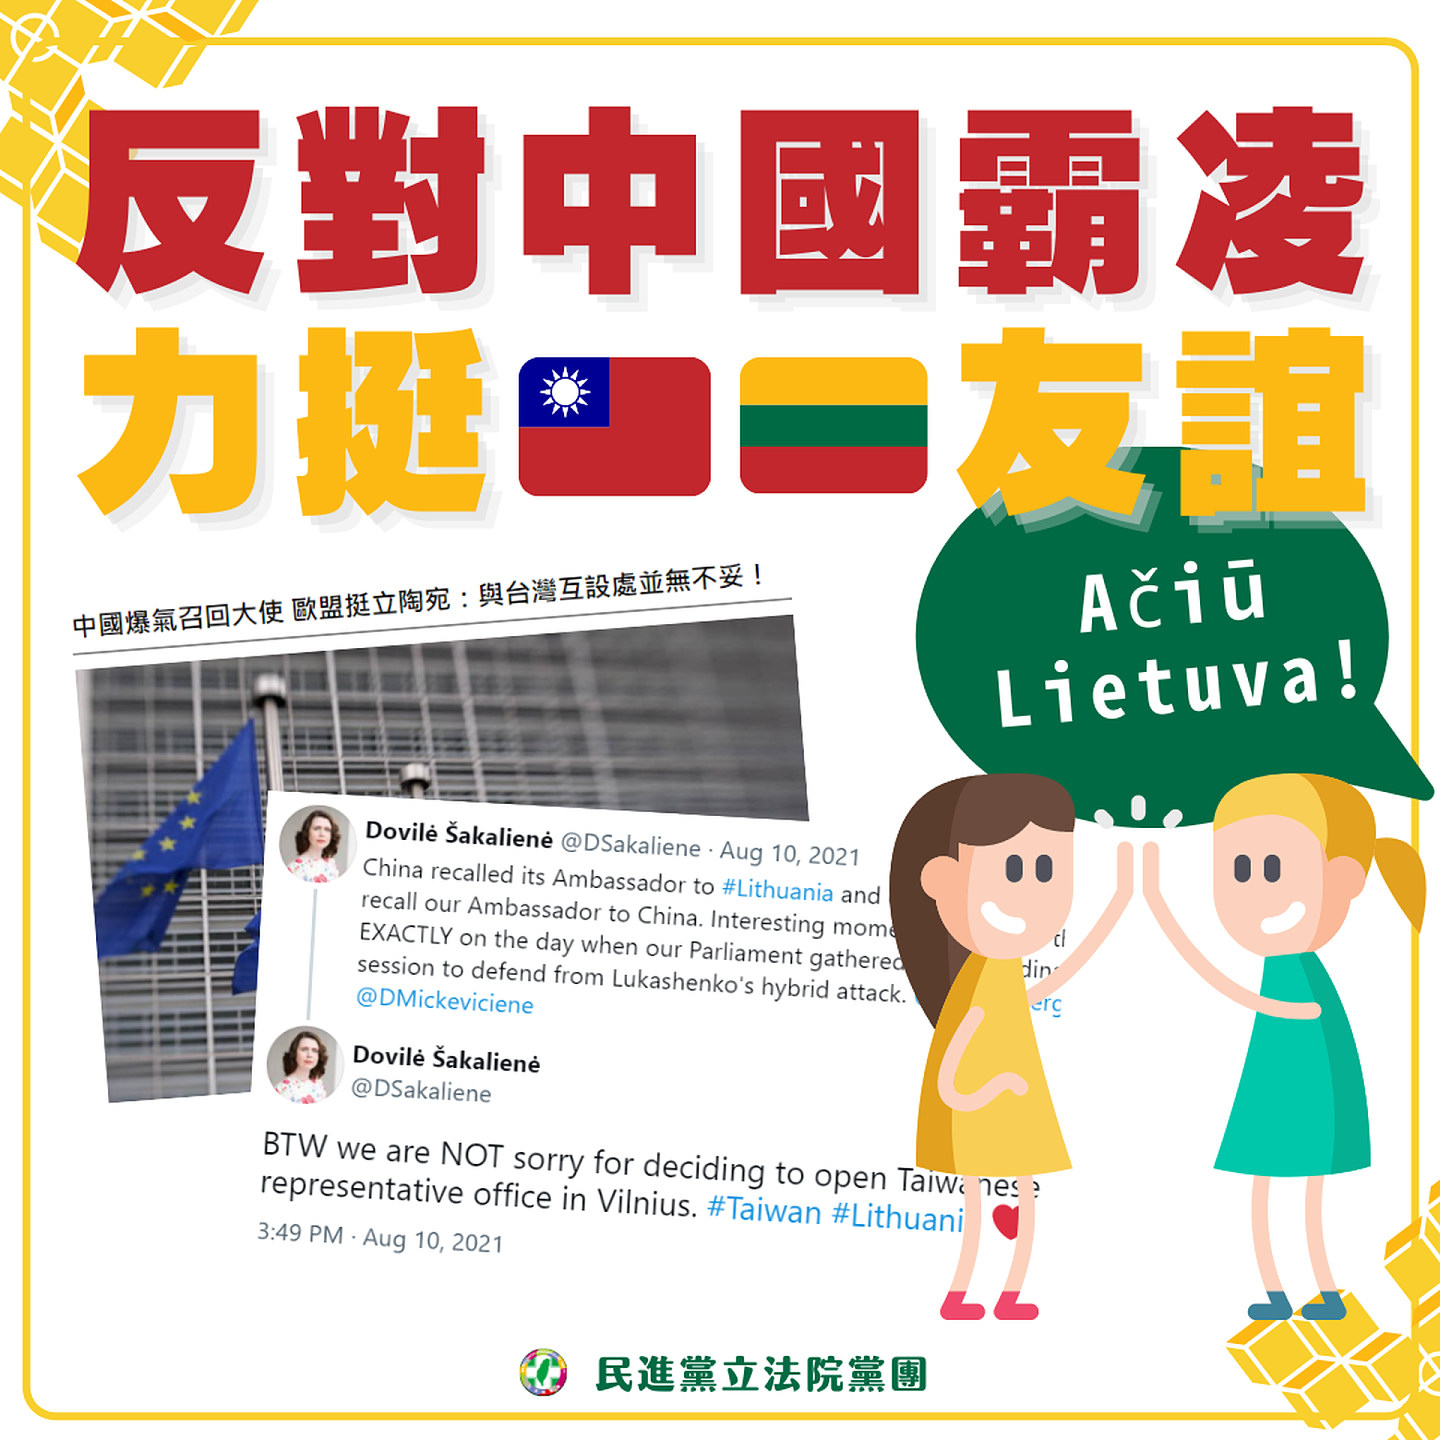 北京激烈抗议立陶宛允许台湾设立以“台湾”为名的代表处，民进党遗憾中国采取“惩罚性外交”，强调没有国家应该为与台湾友好而受到报复。（民进党立法院党团）